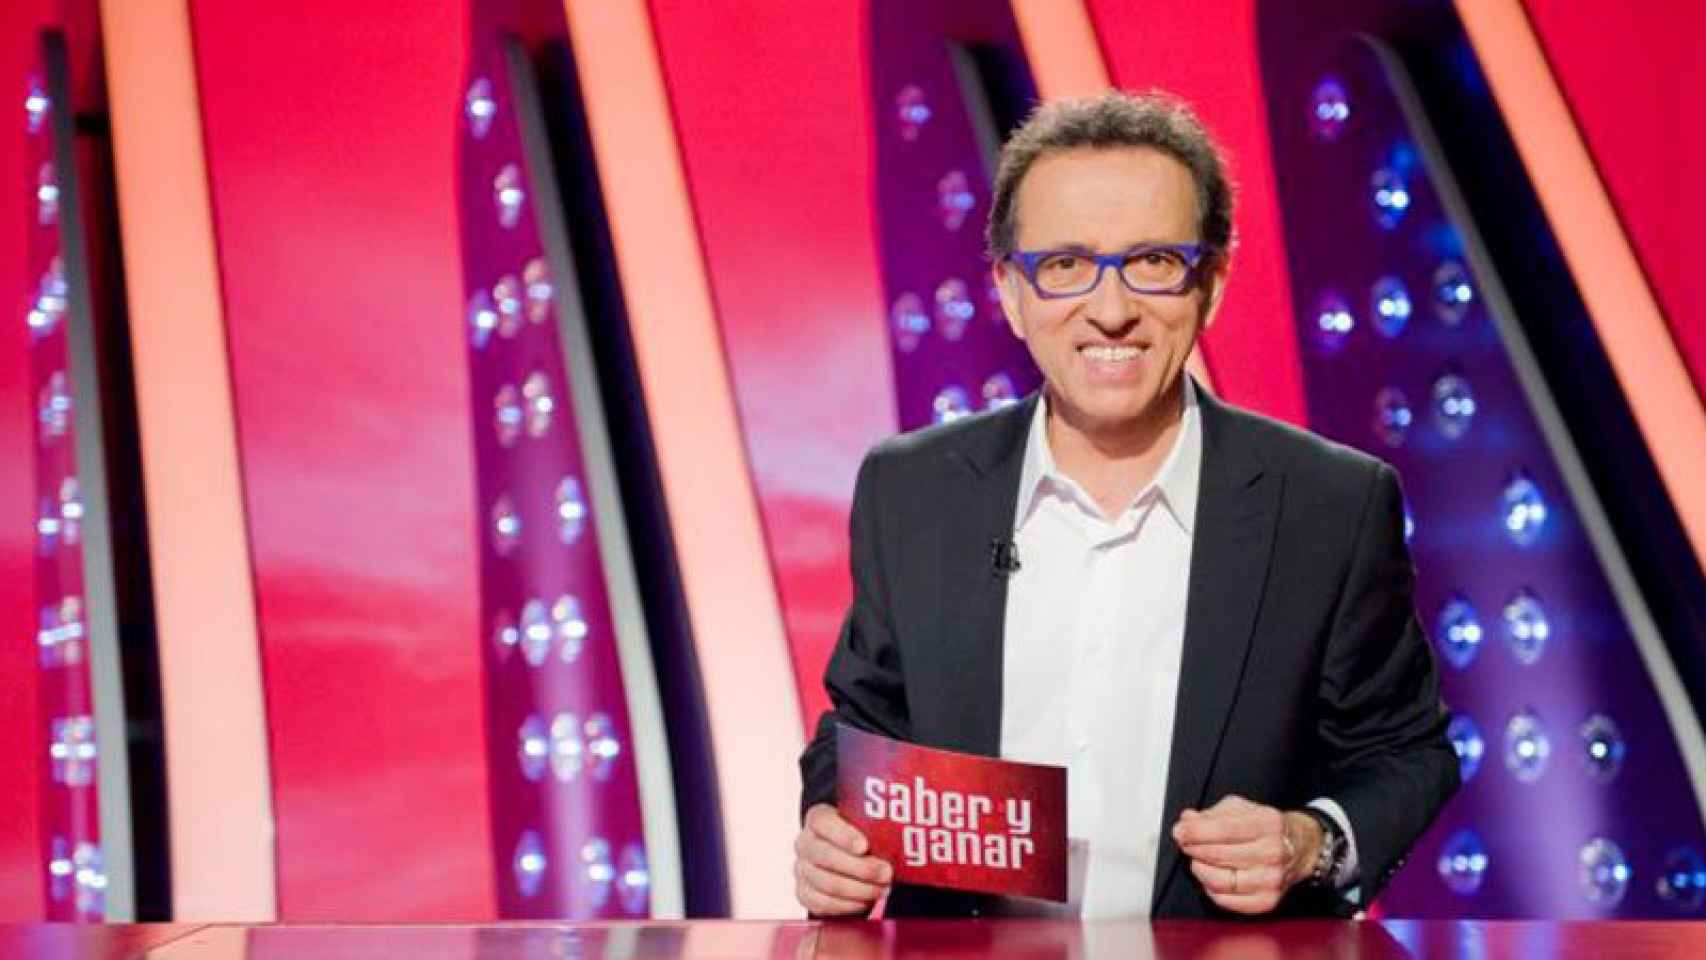 Jordi Hurtado, presentador de 'Saber y Ganar' en TVE desde hace más de 19 años / TVE